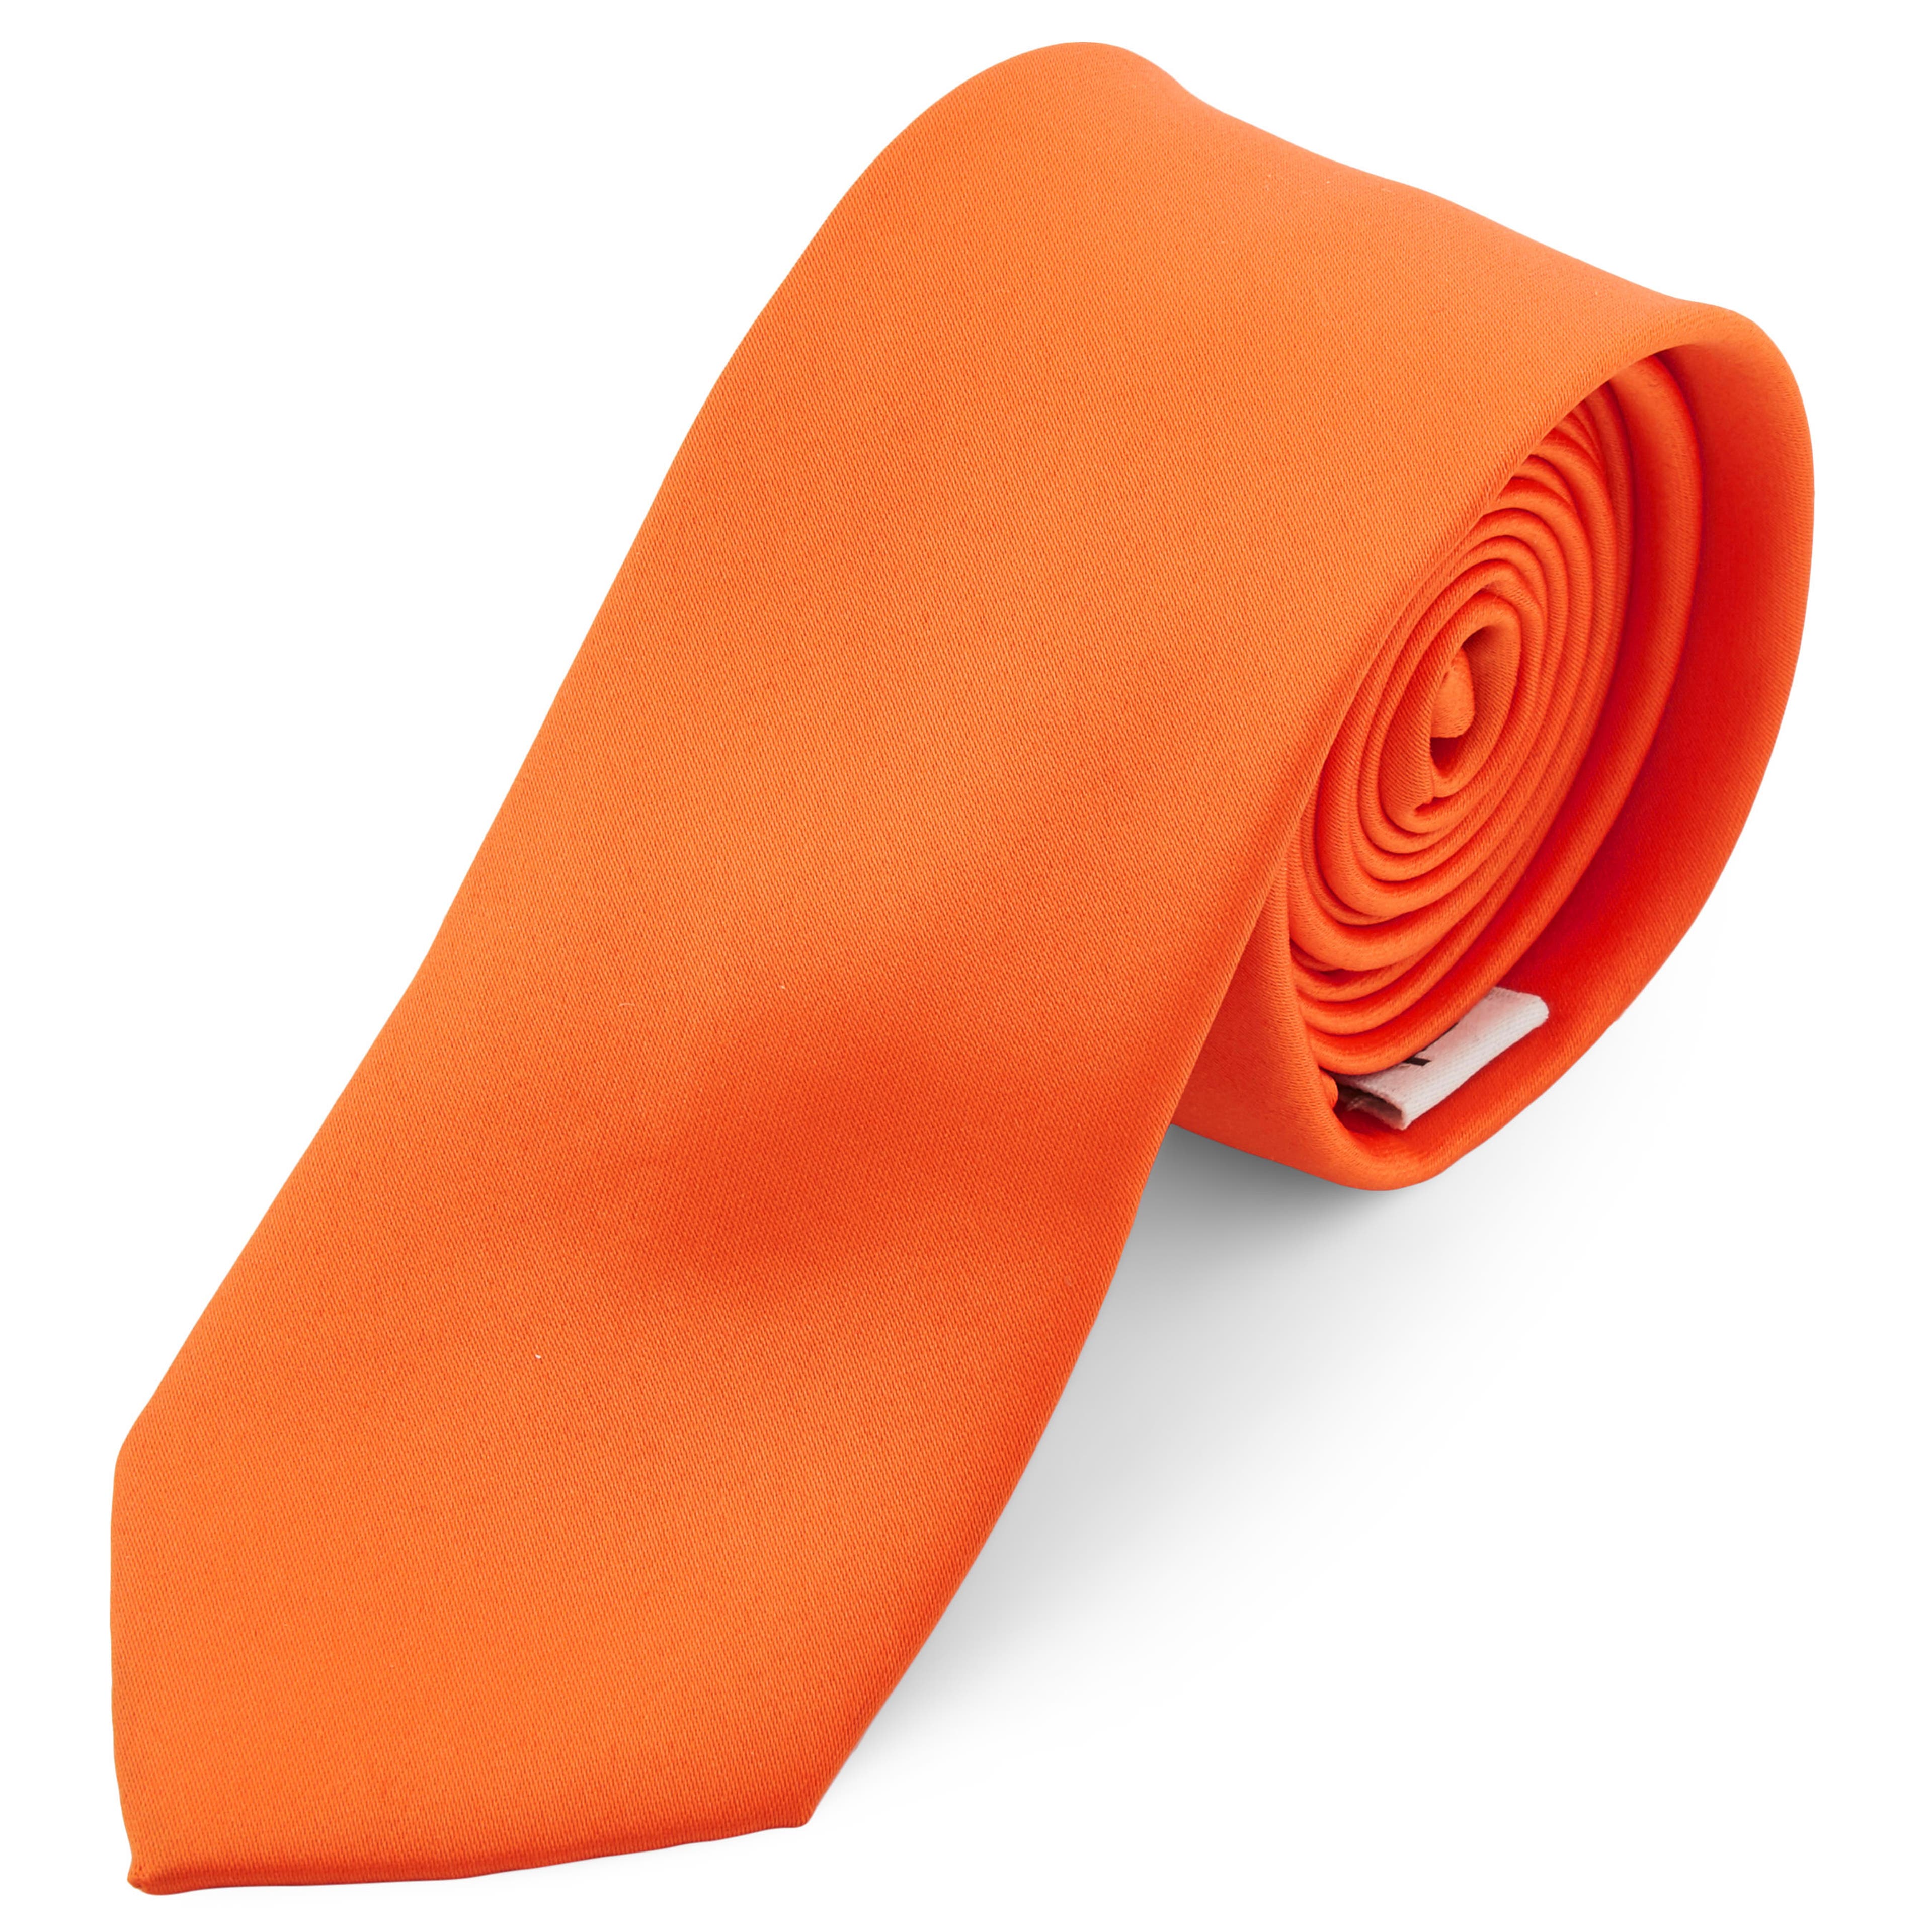 Semplice cravatta arancione acceso da 6 cm